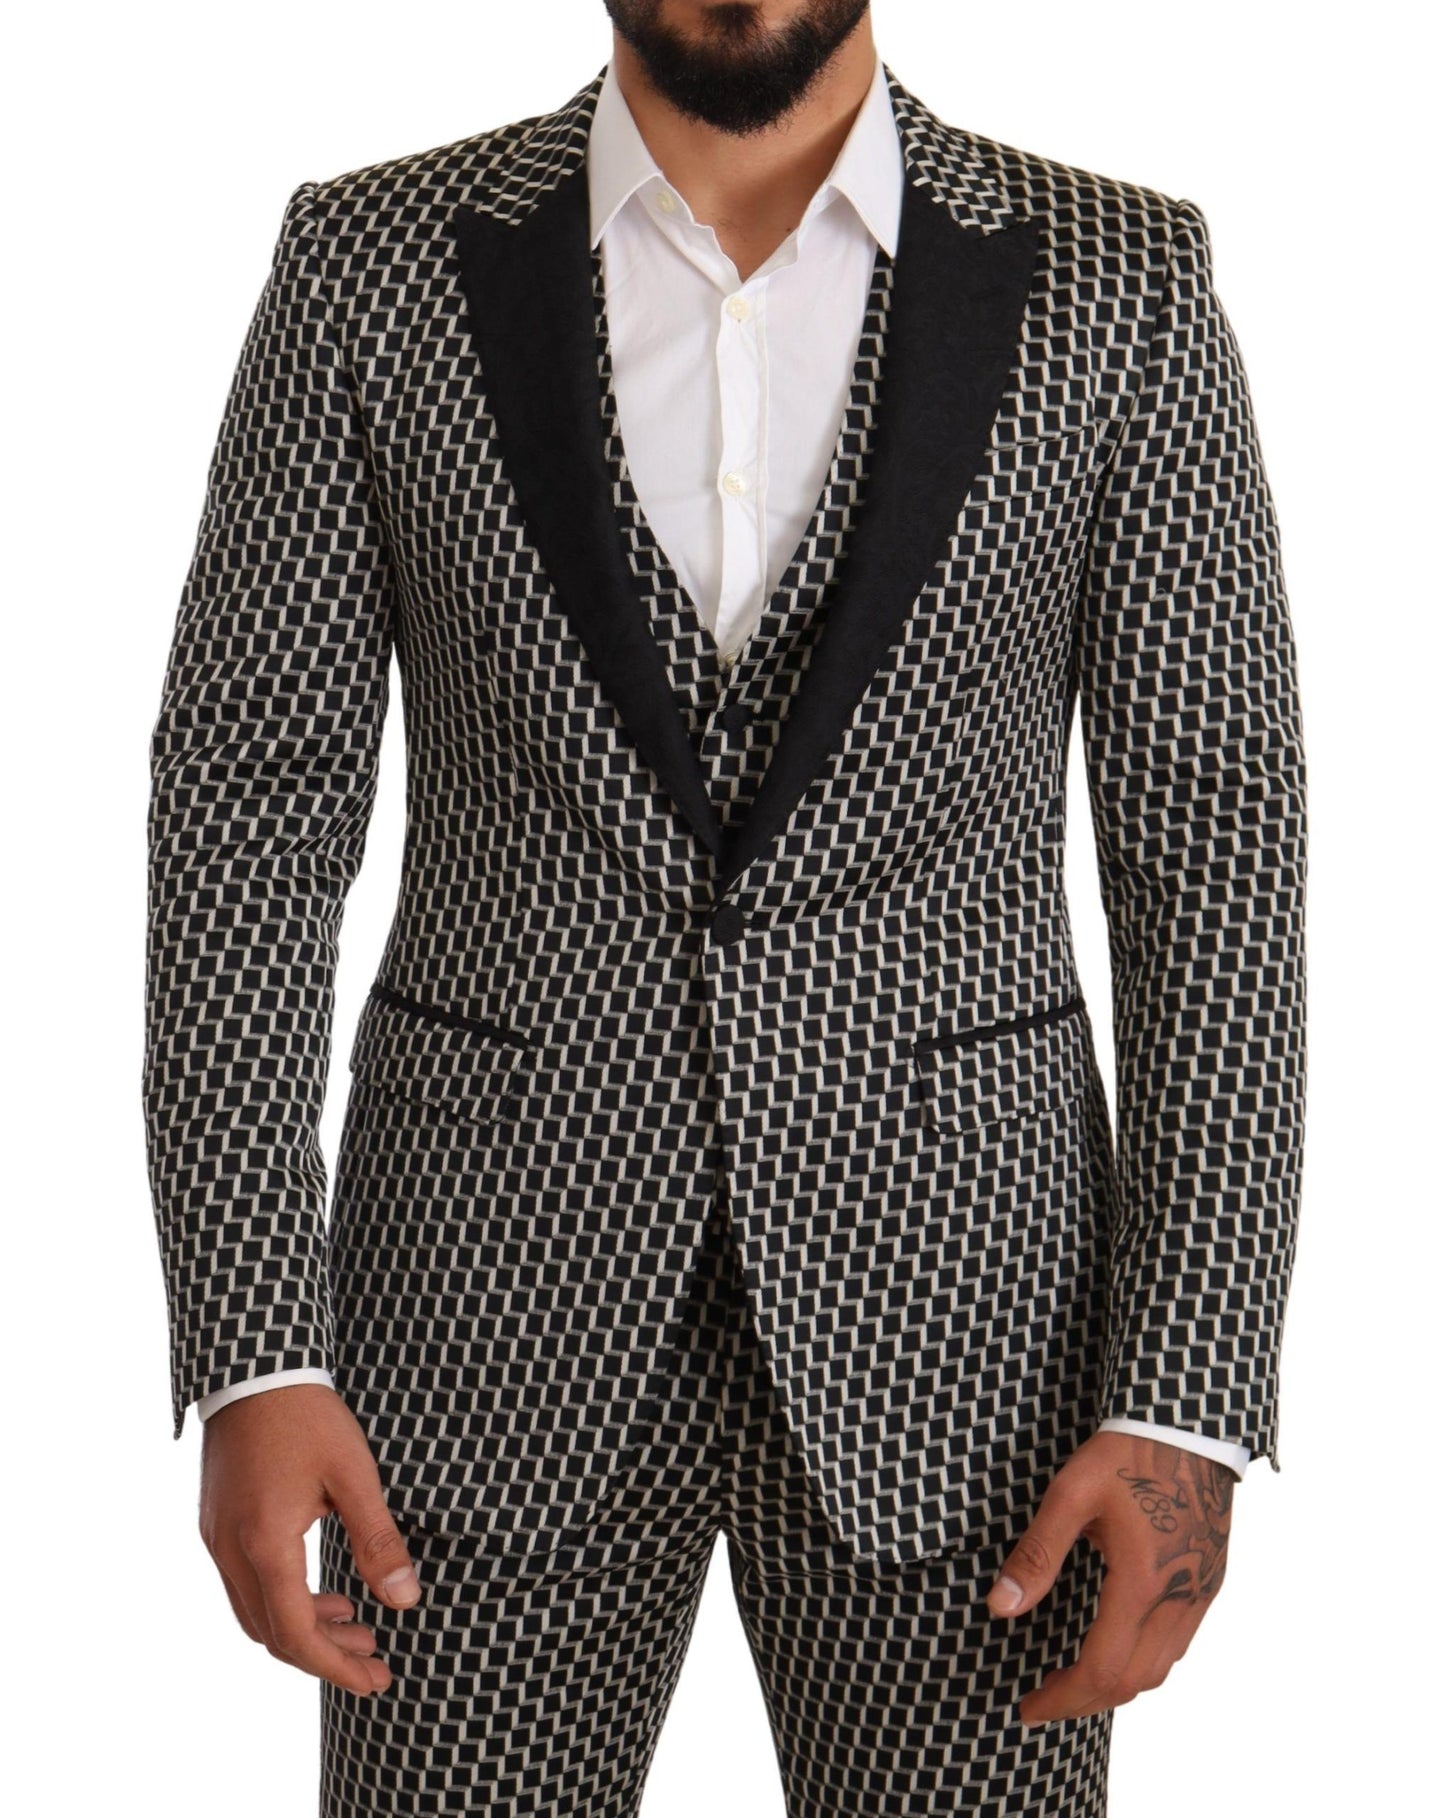 Elegant Martini Black Check Three-Piece Suit